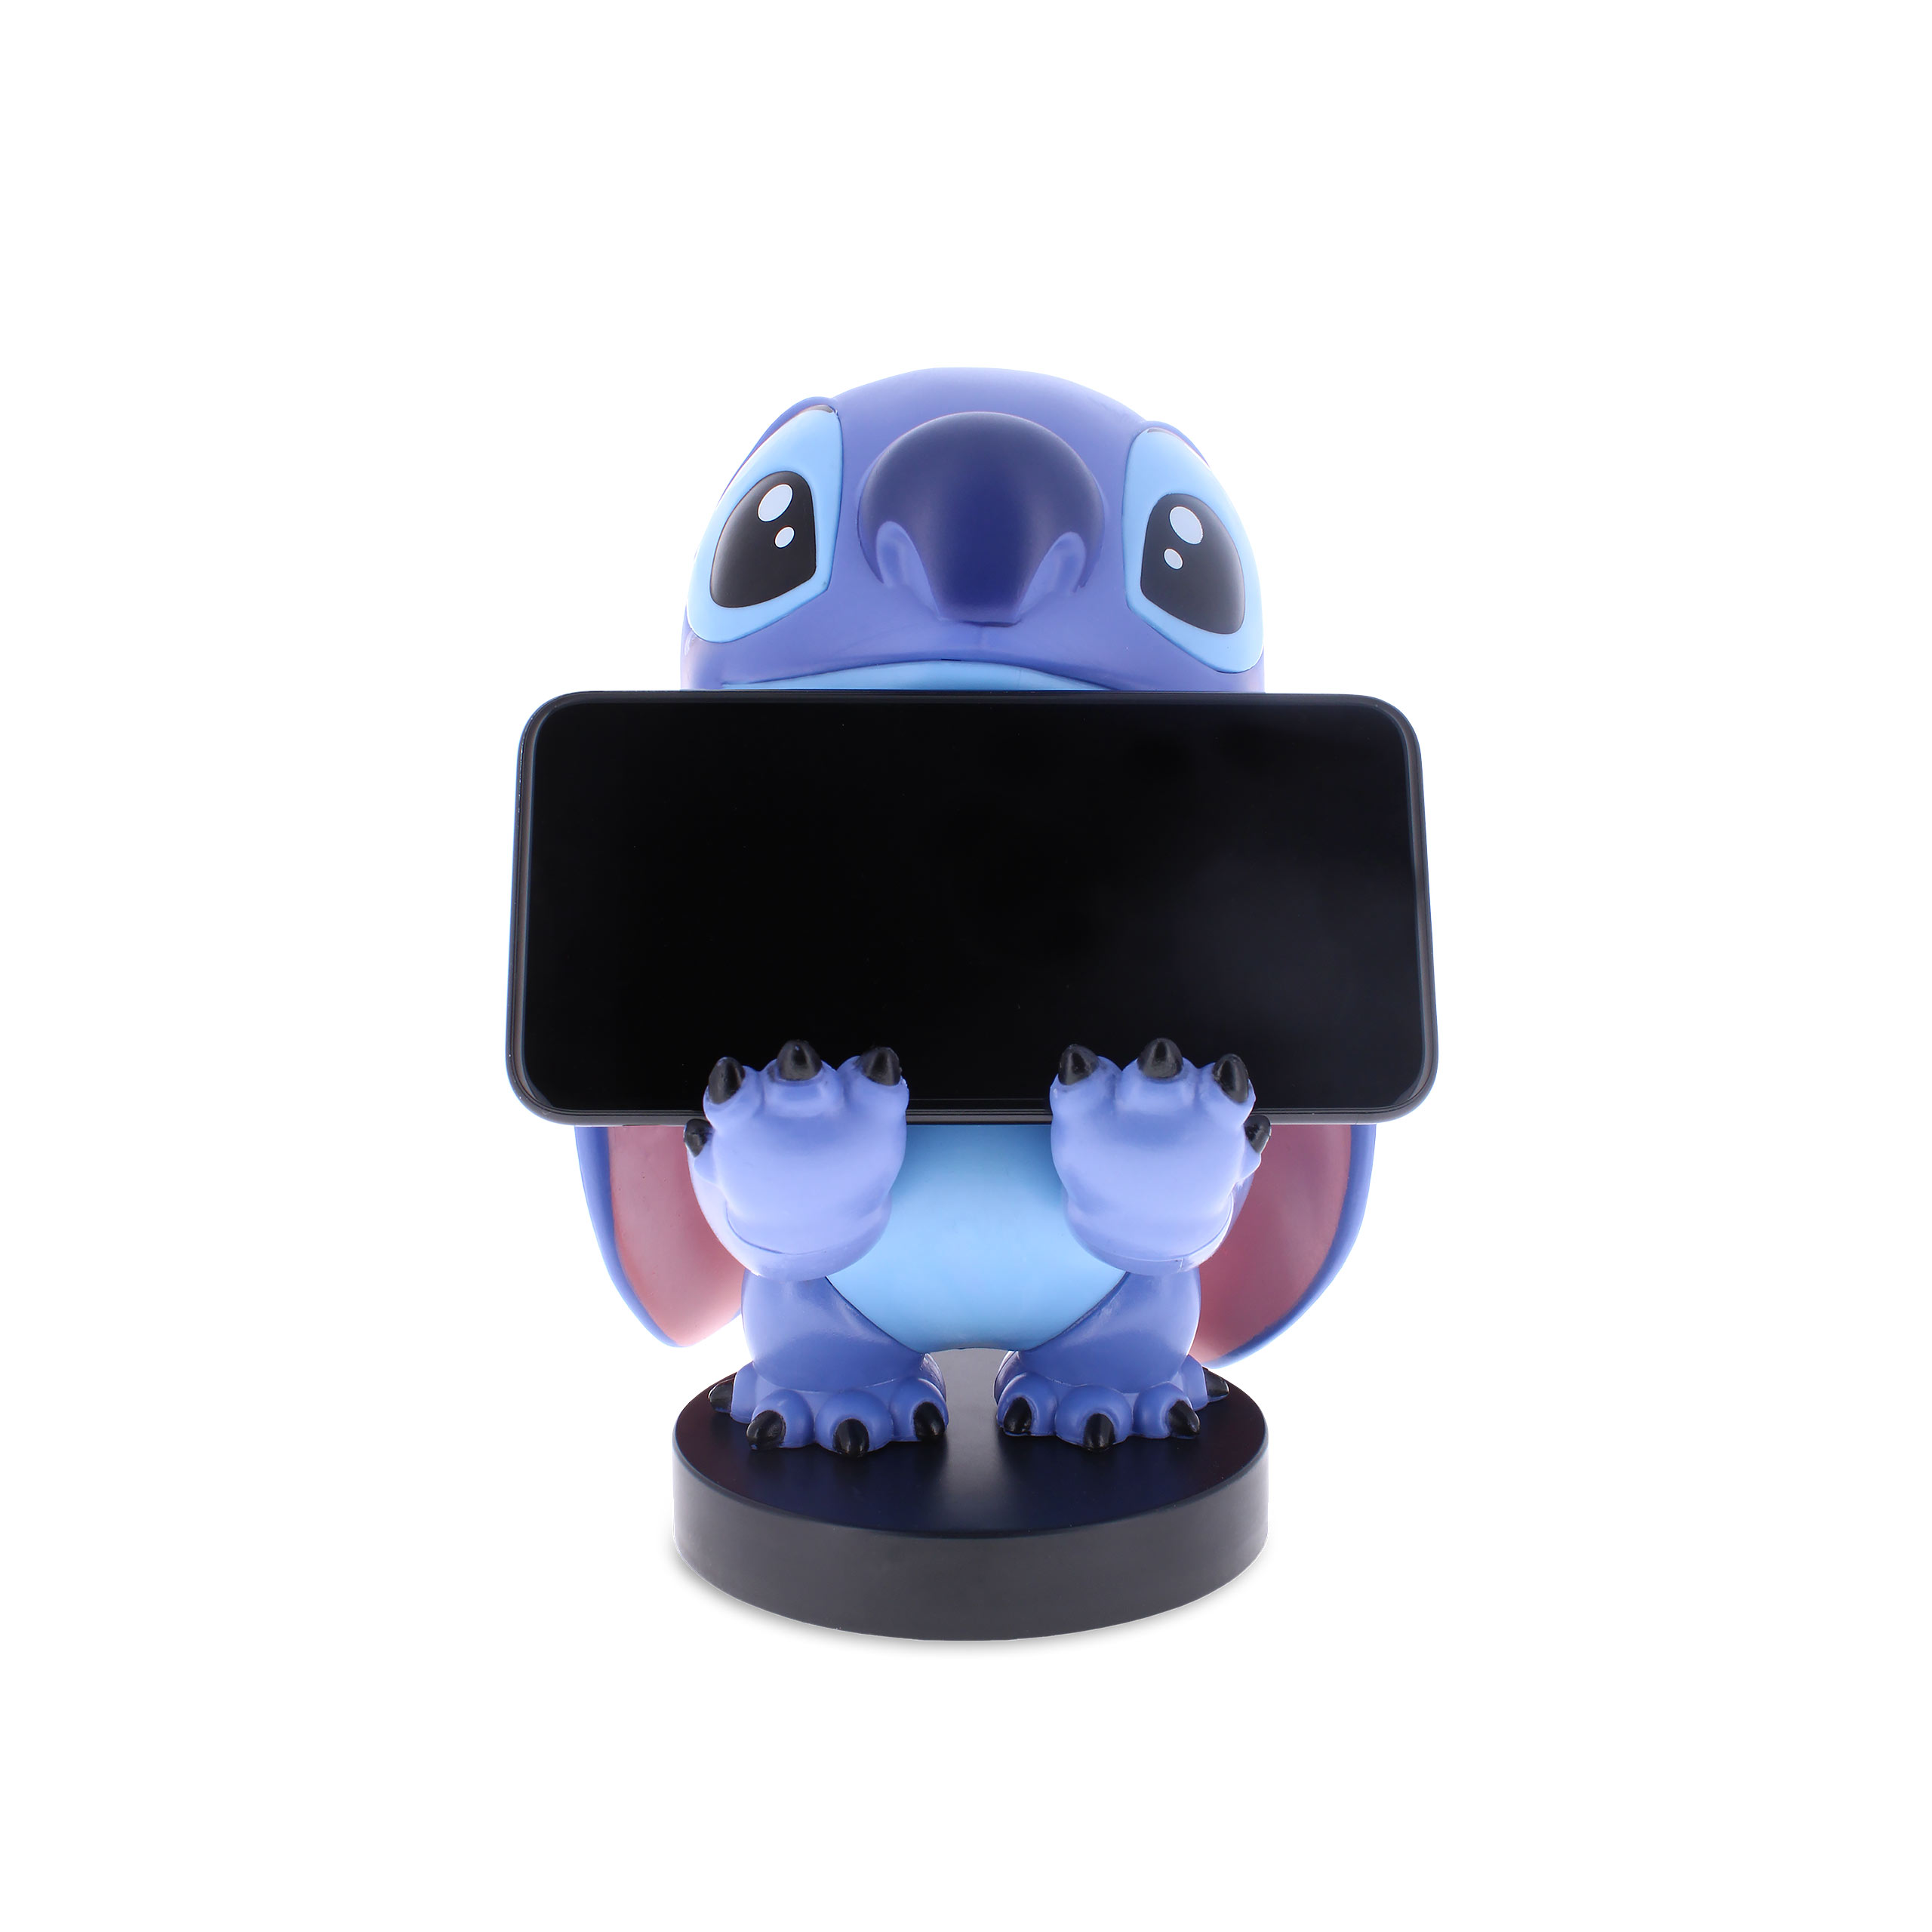 Lilo & Stitch Cable Guy Figur